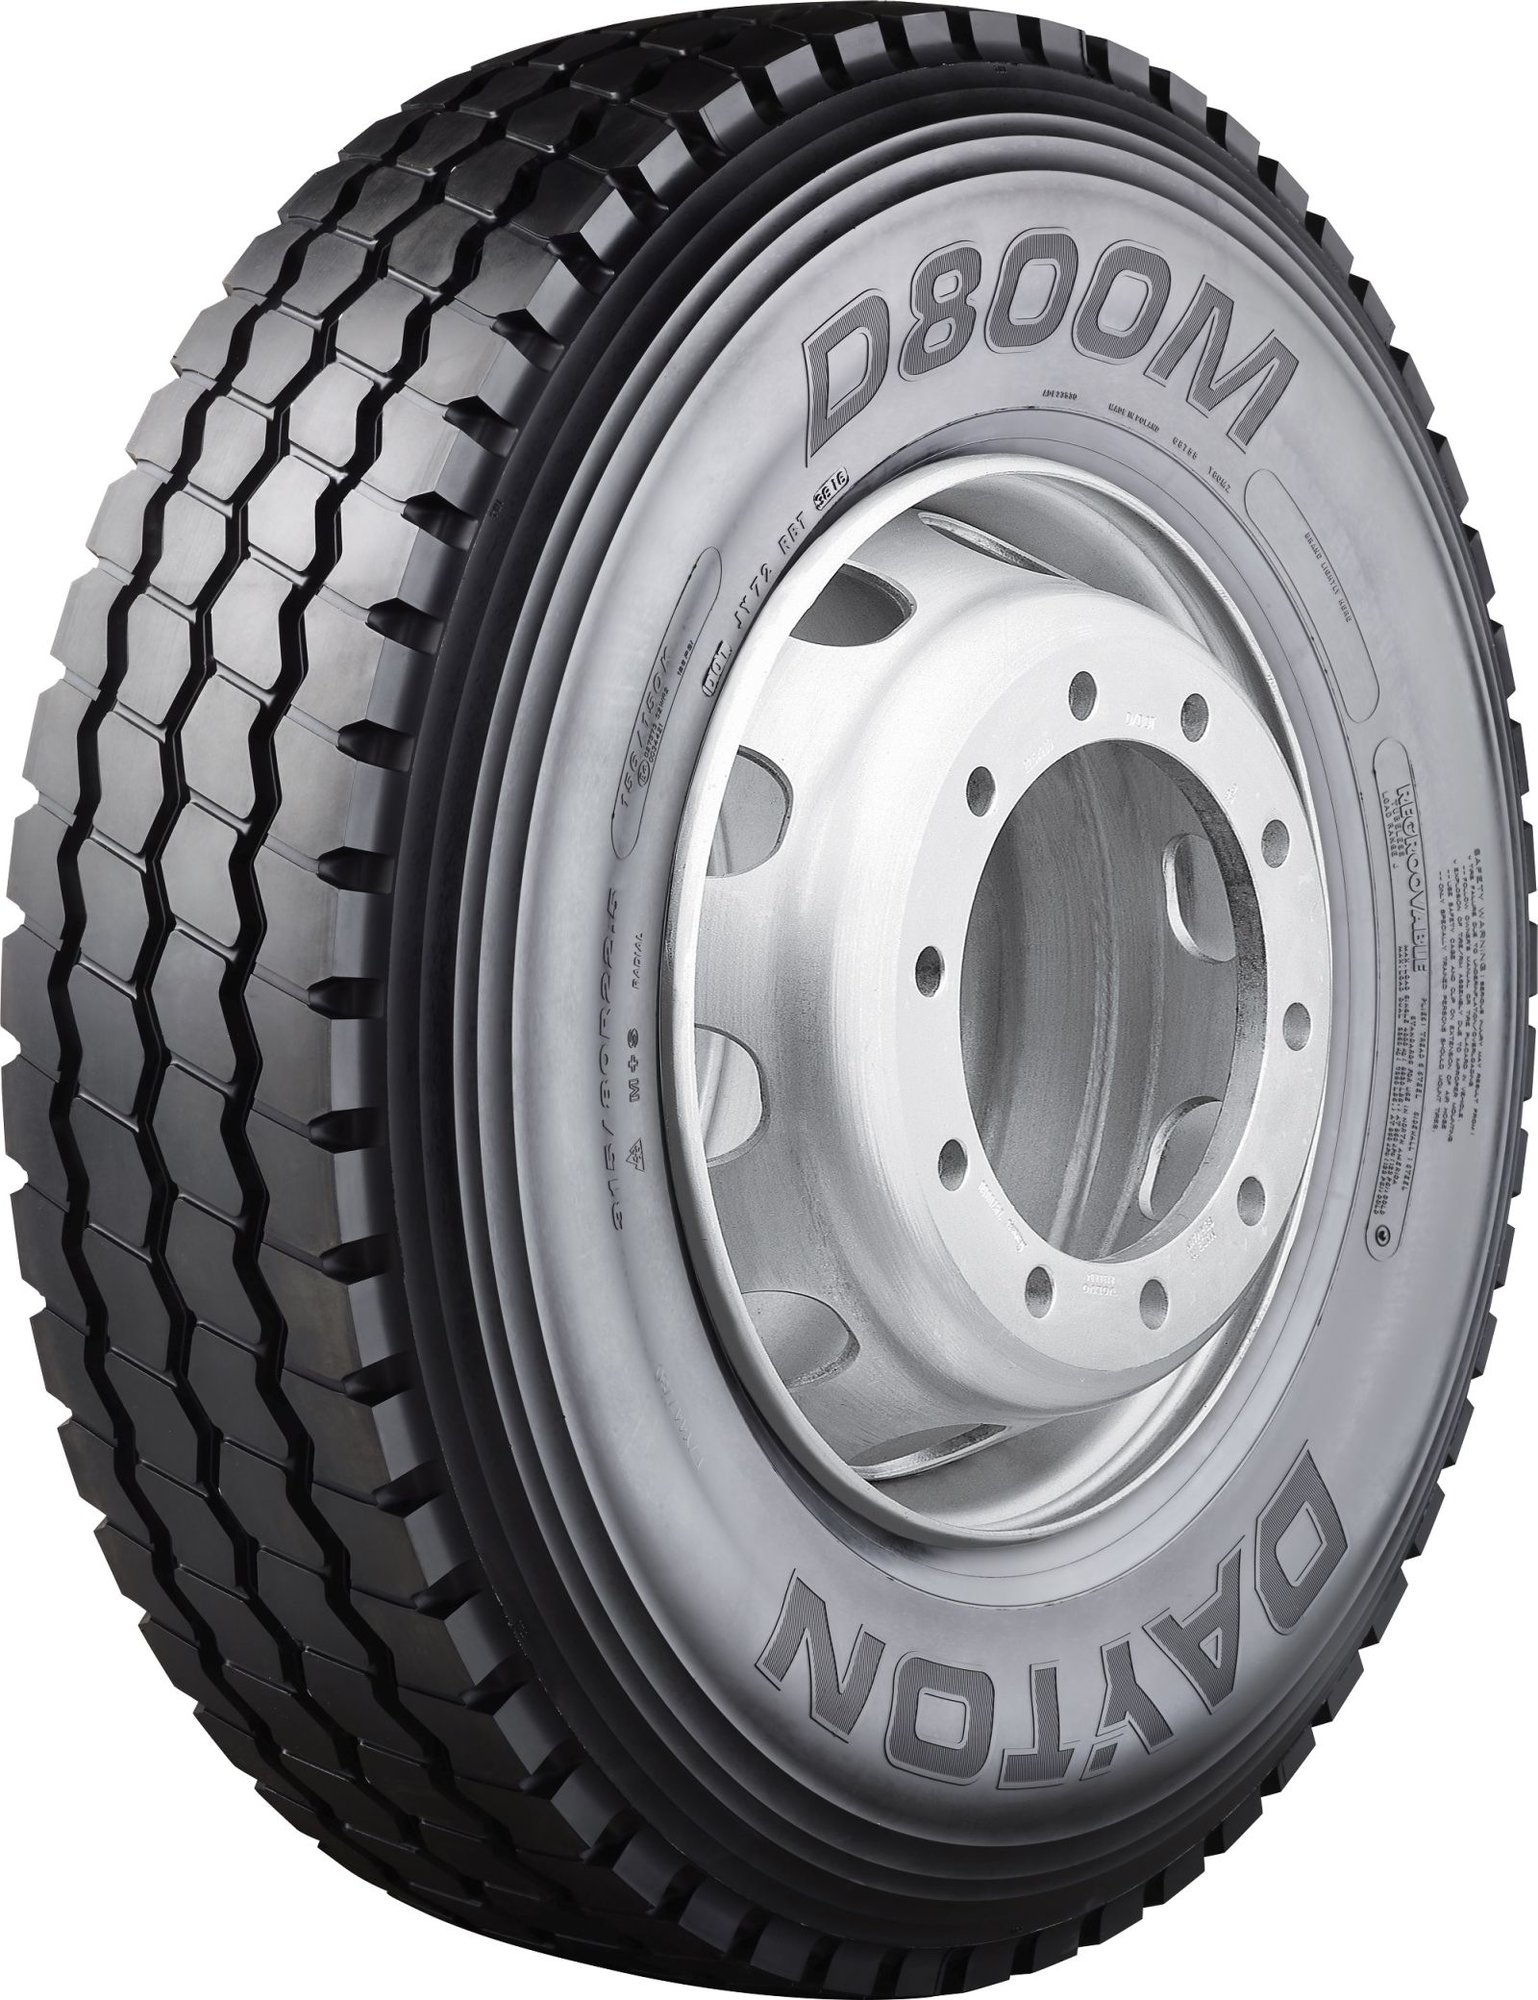 Výrobce Dayton představuje nové typy pneumatik pro smíšený provoz.